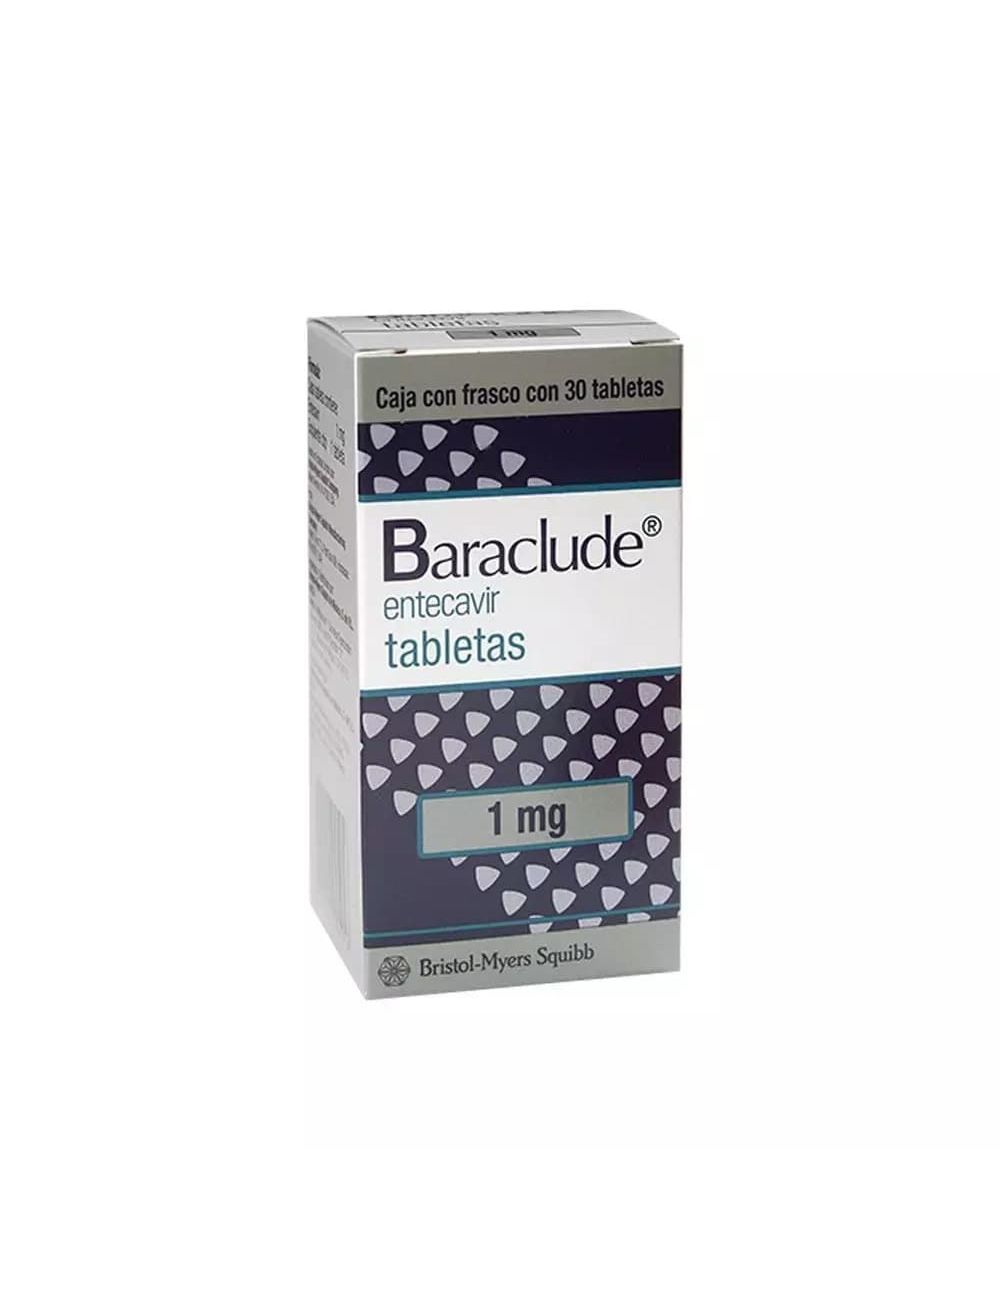 Baraclude (Entecavir) Tabs 1 mg Cja c/30 tabs